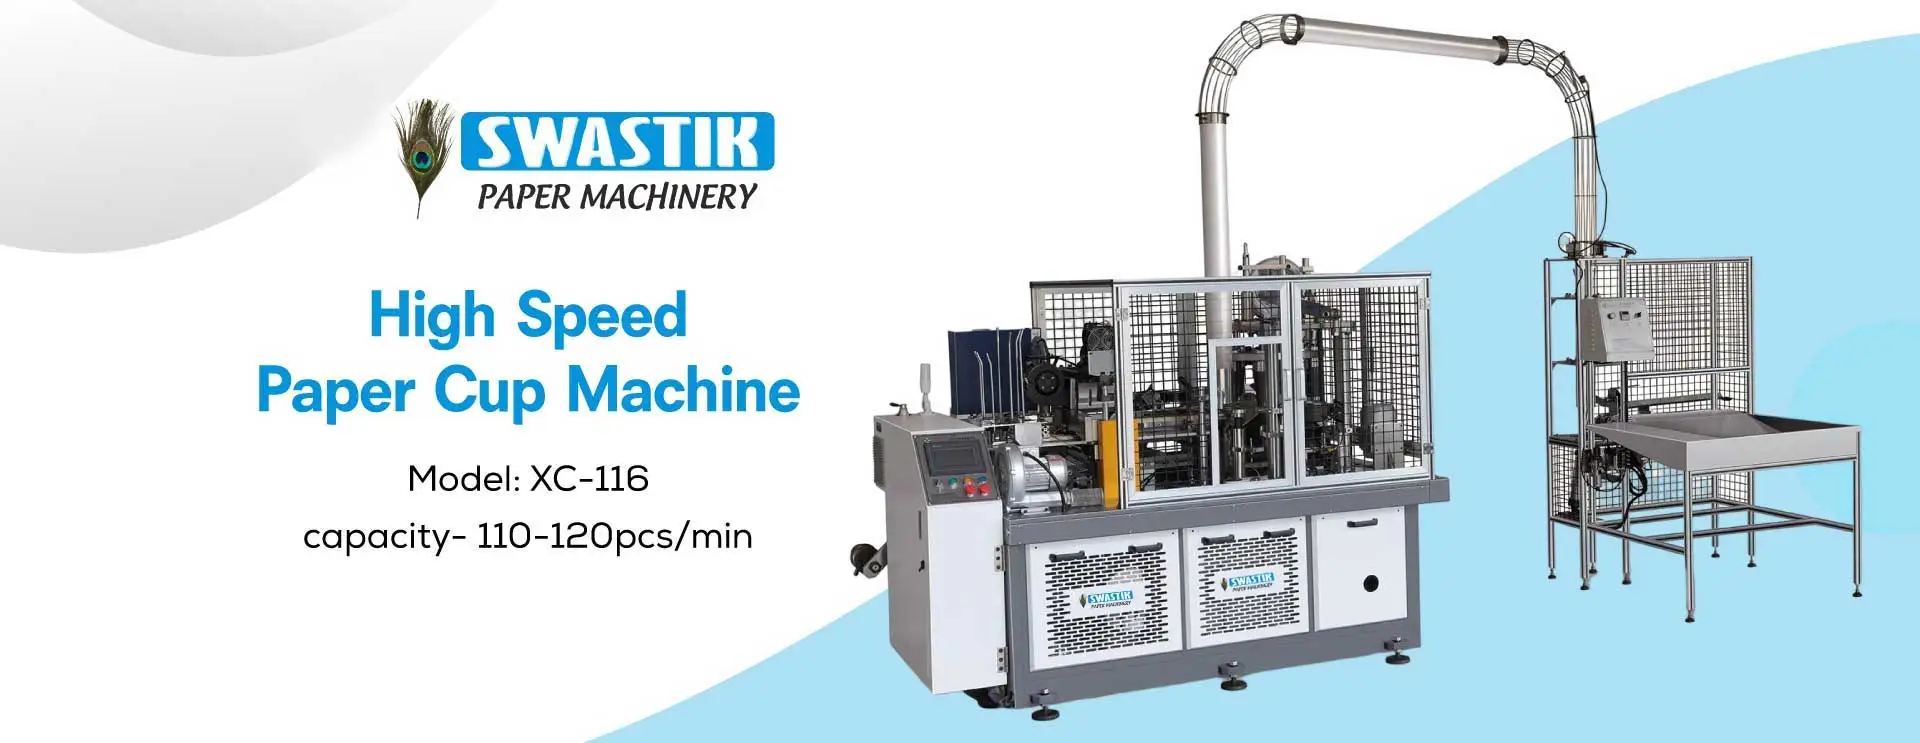 High Speed Paper Cup Machine Manufacturers in Bilaspur